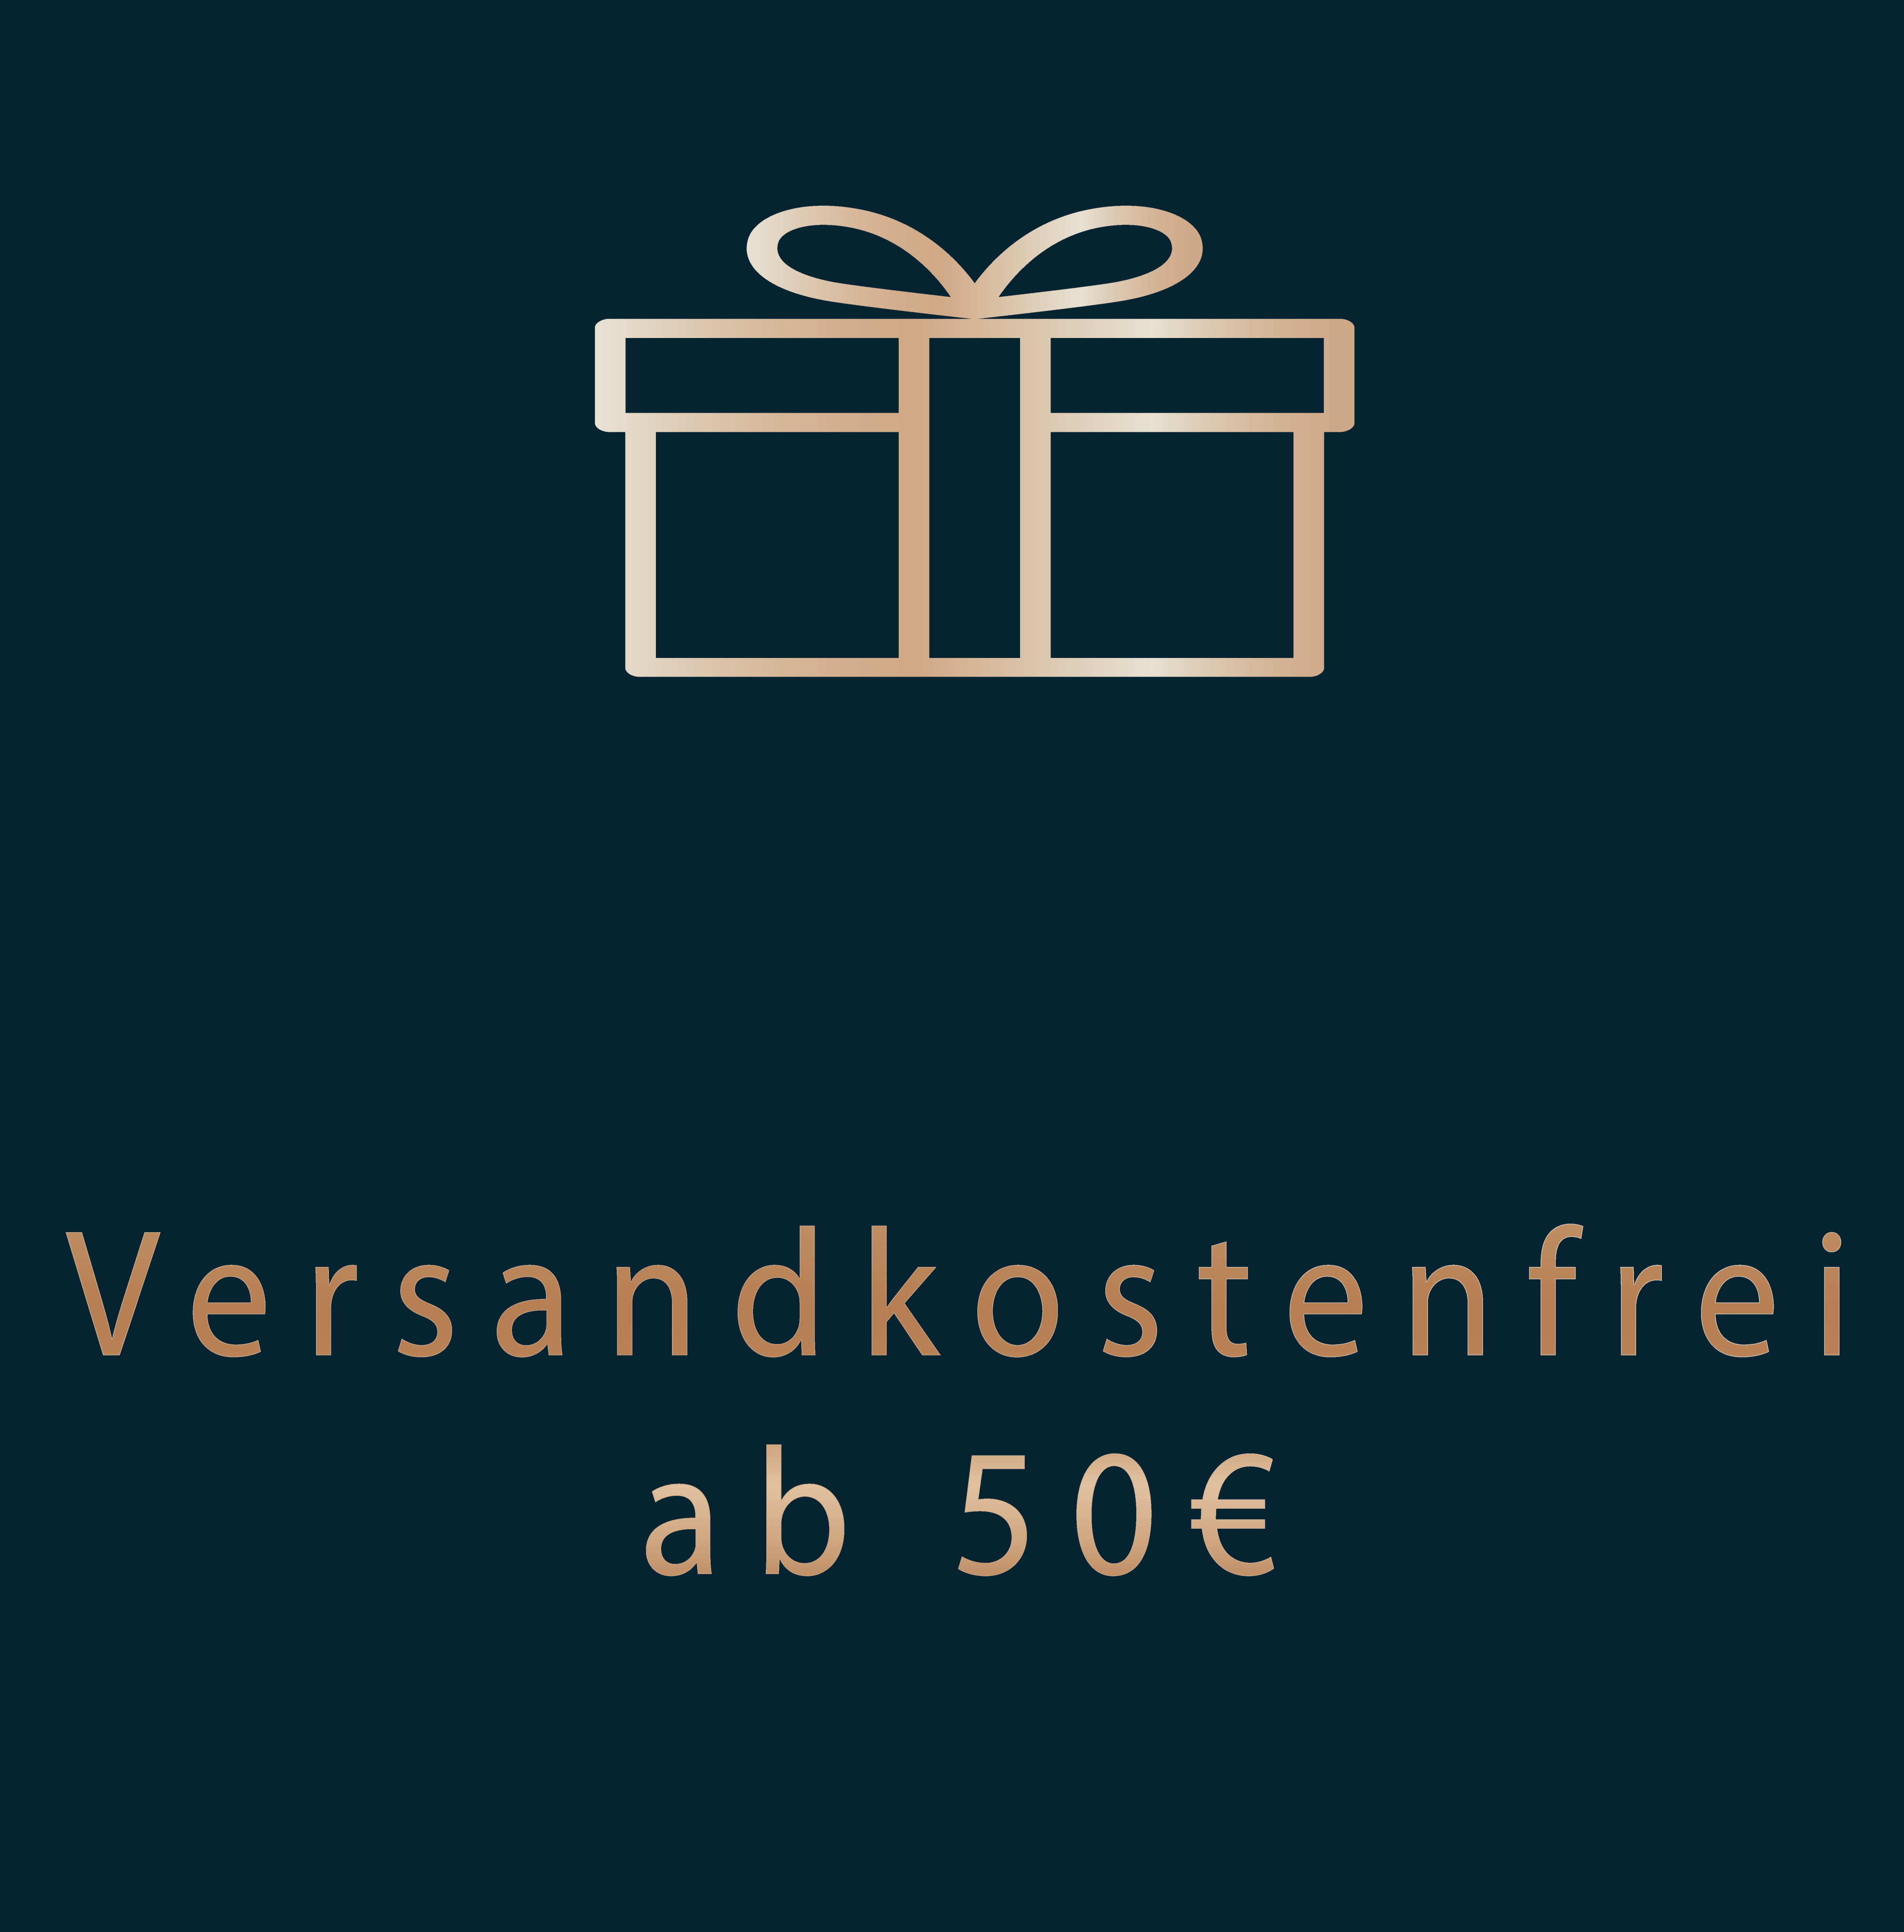 Goldene Schrift: „Versandkostenfrei ab 50€" auf dunkelblauen Hintergrund